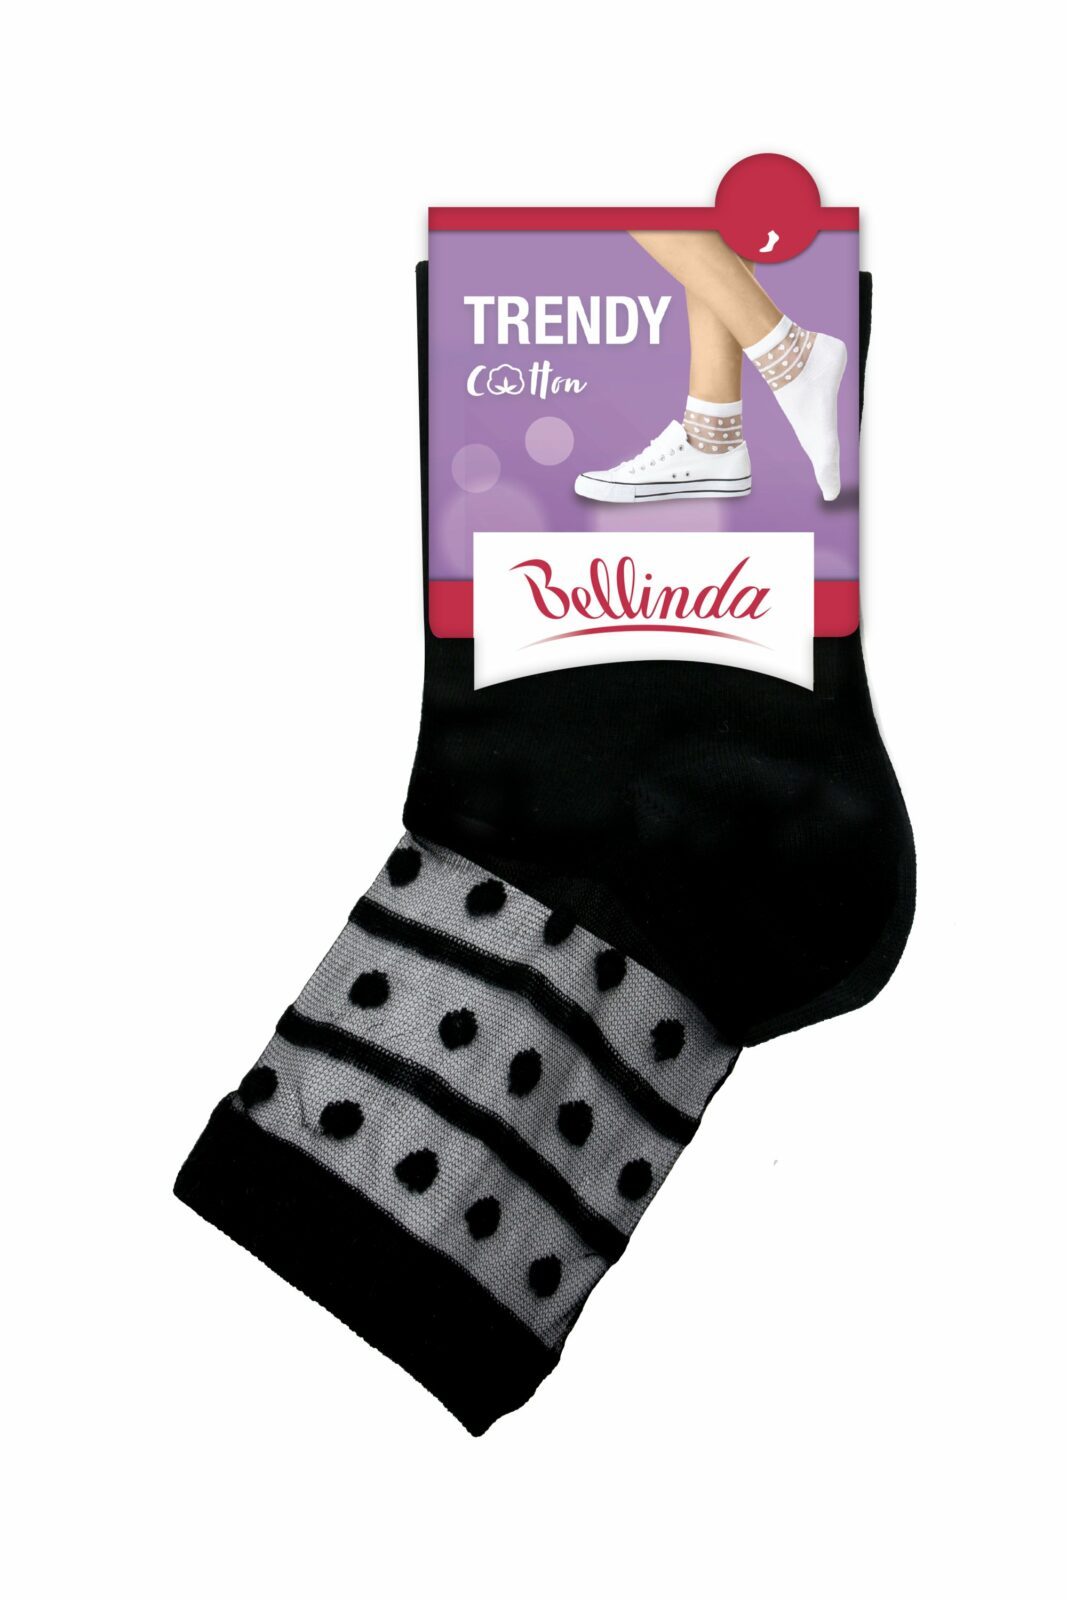 Bellinda Dámské ponožky TRENDY COTTON SOCKS - Dámské